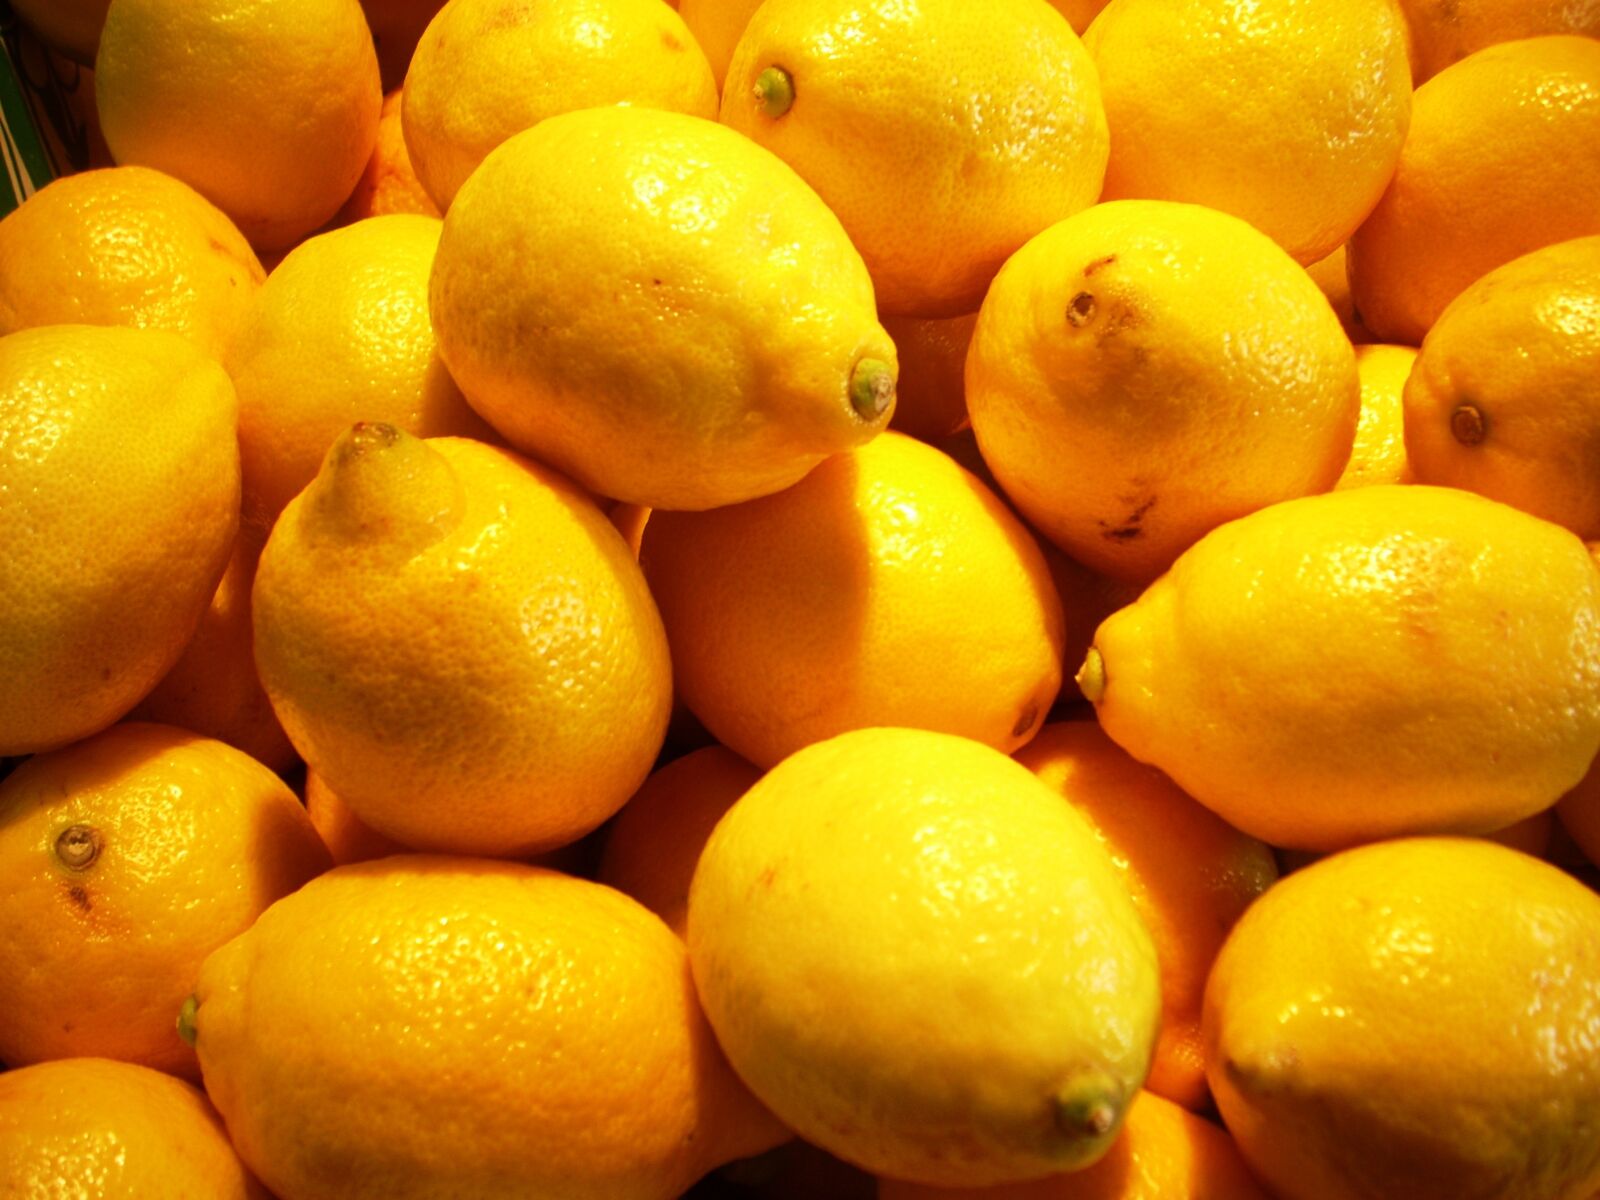 Nikon COOLPIX L11 sample photo. Lemon, lemons, citrus photography